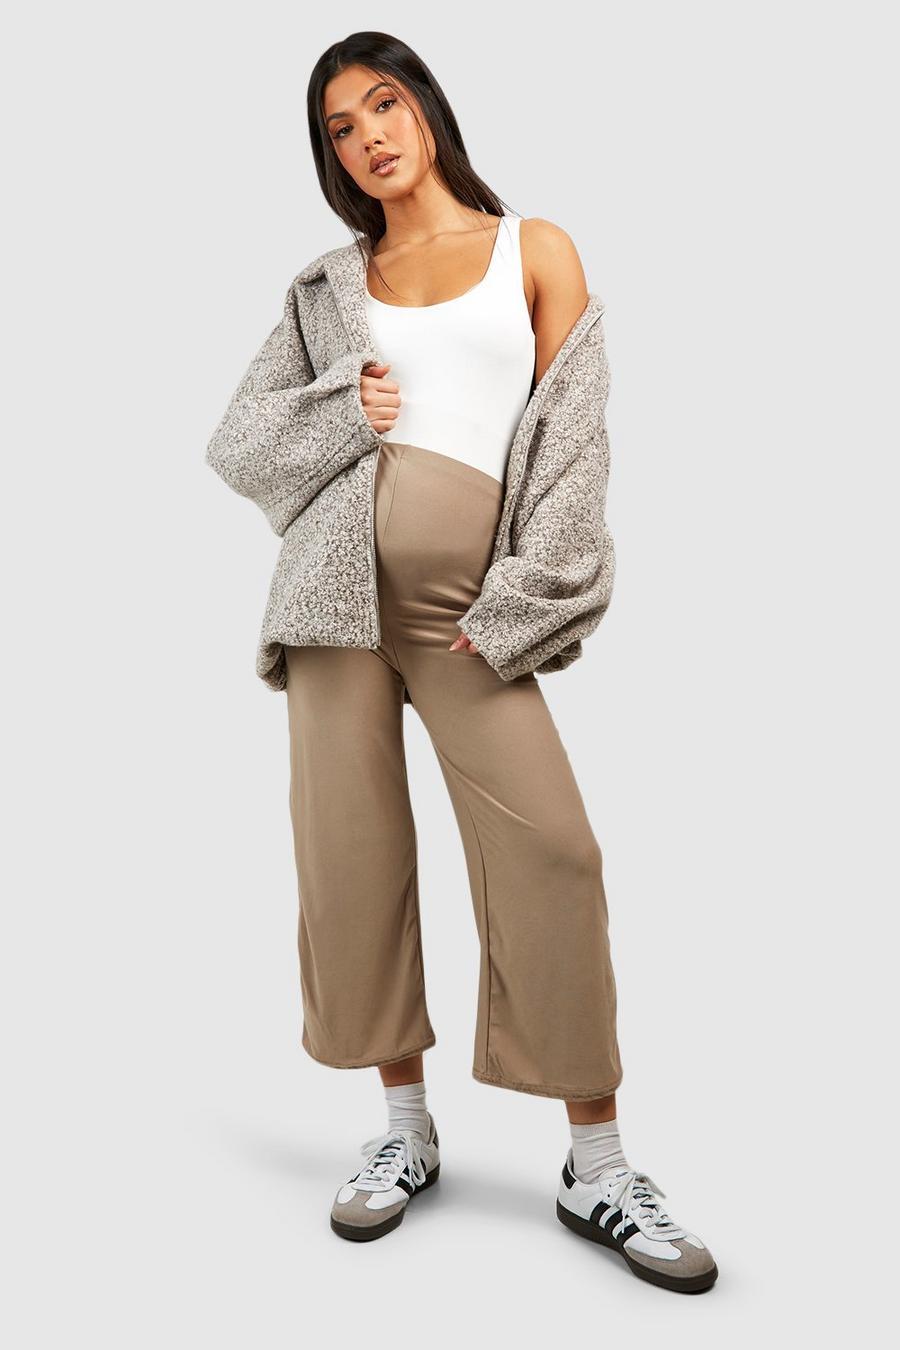 Soft maternity pants